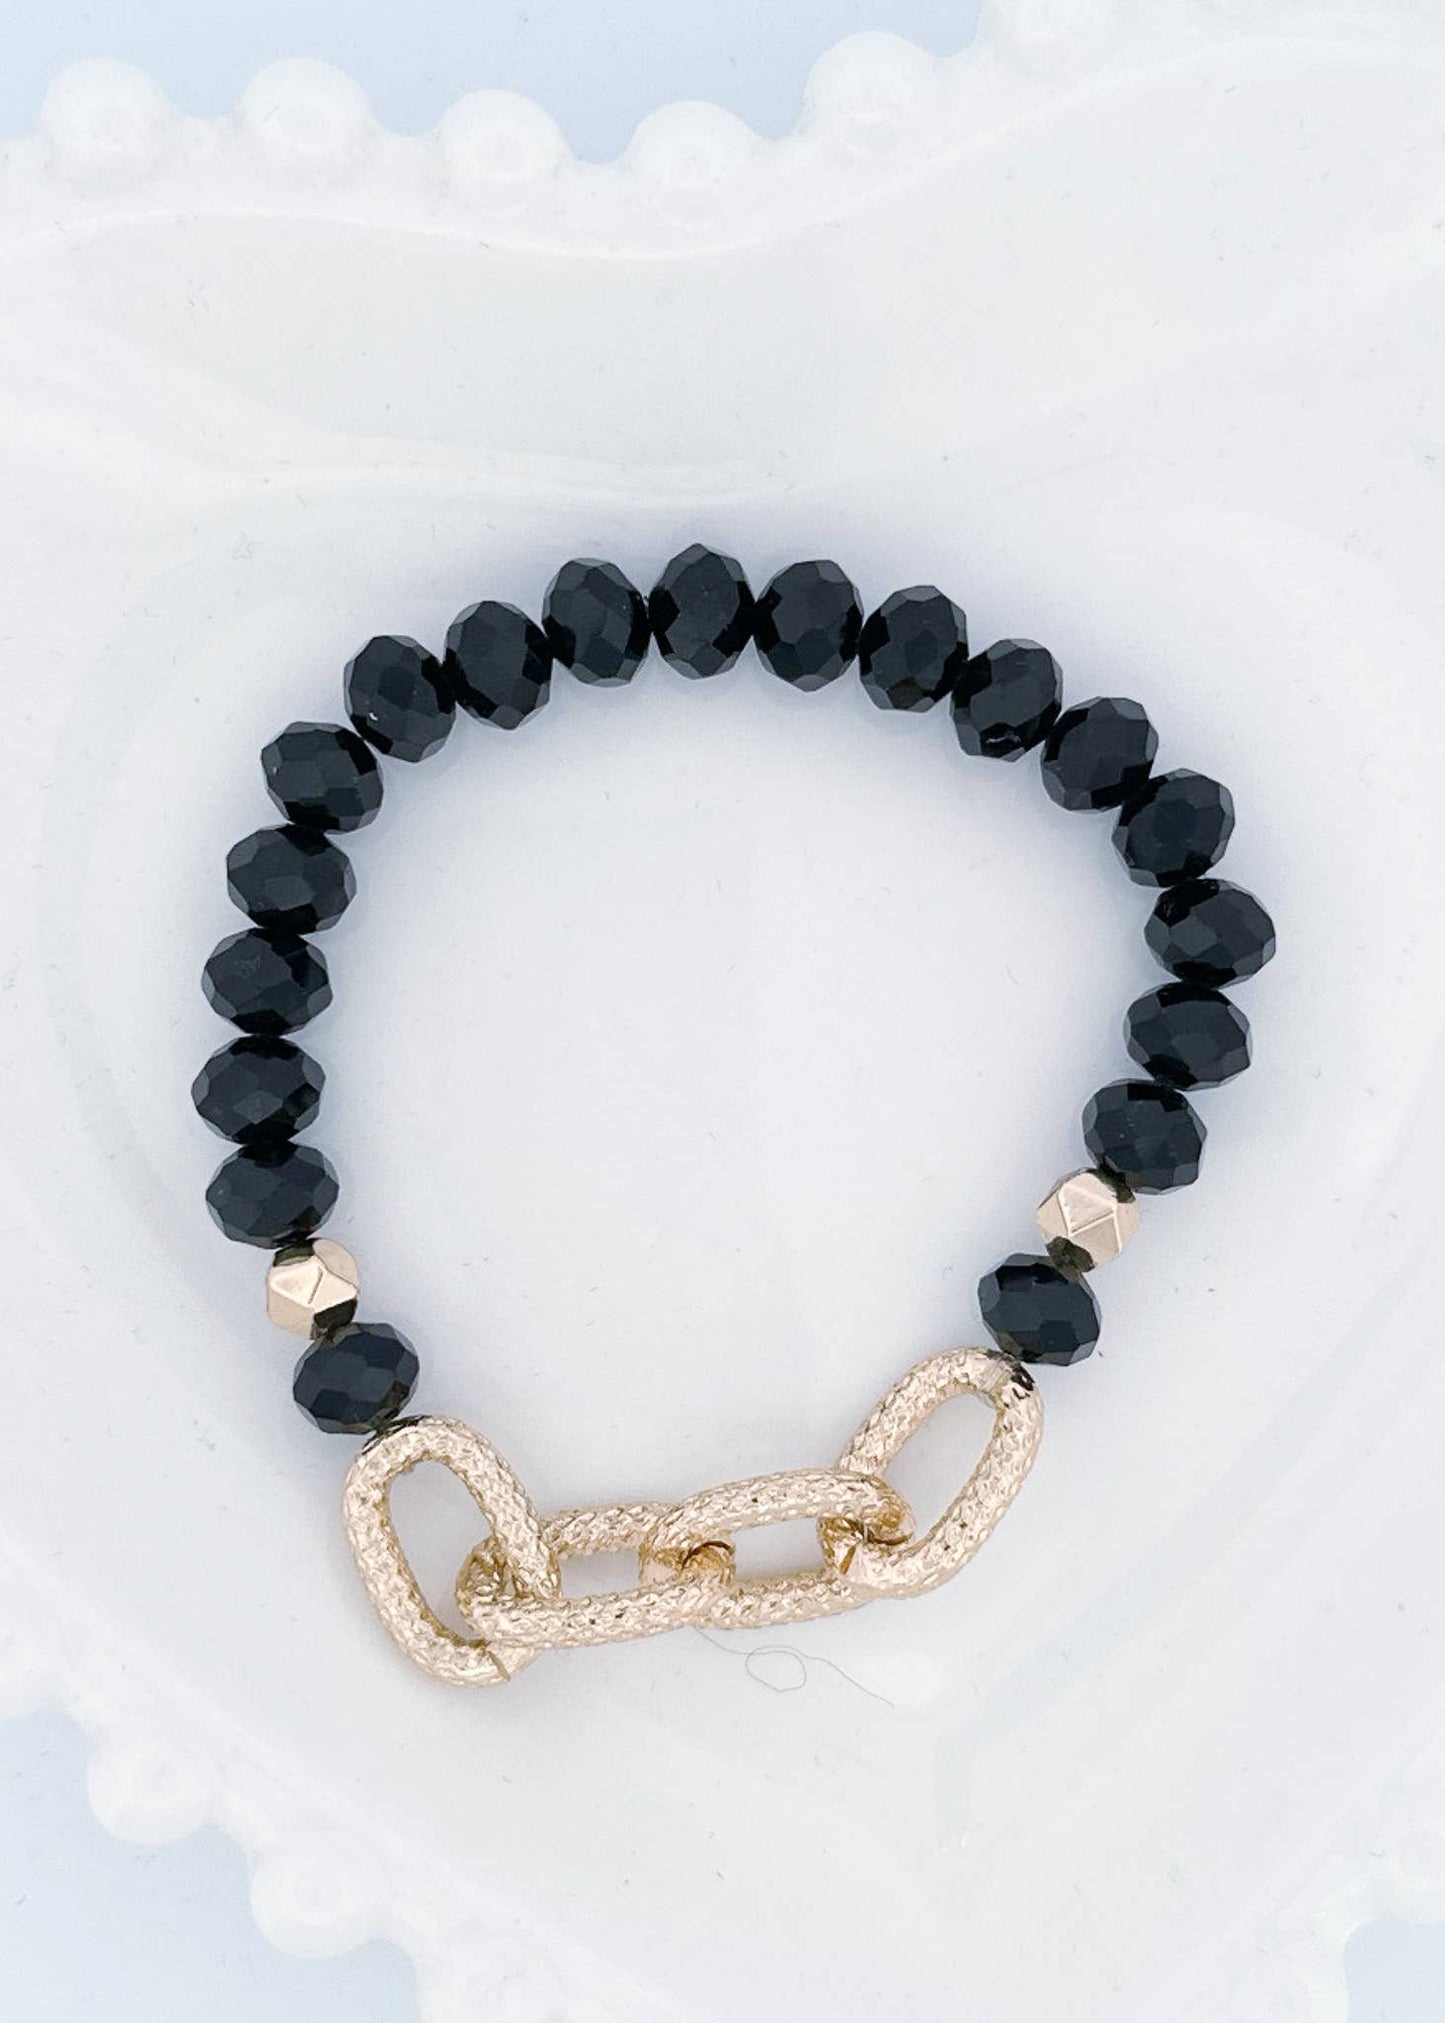 Chain + Bead Stretch Bracelet